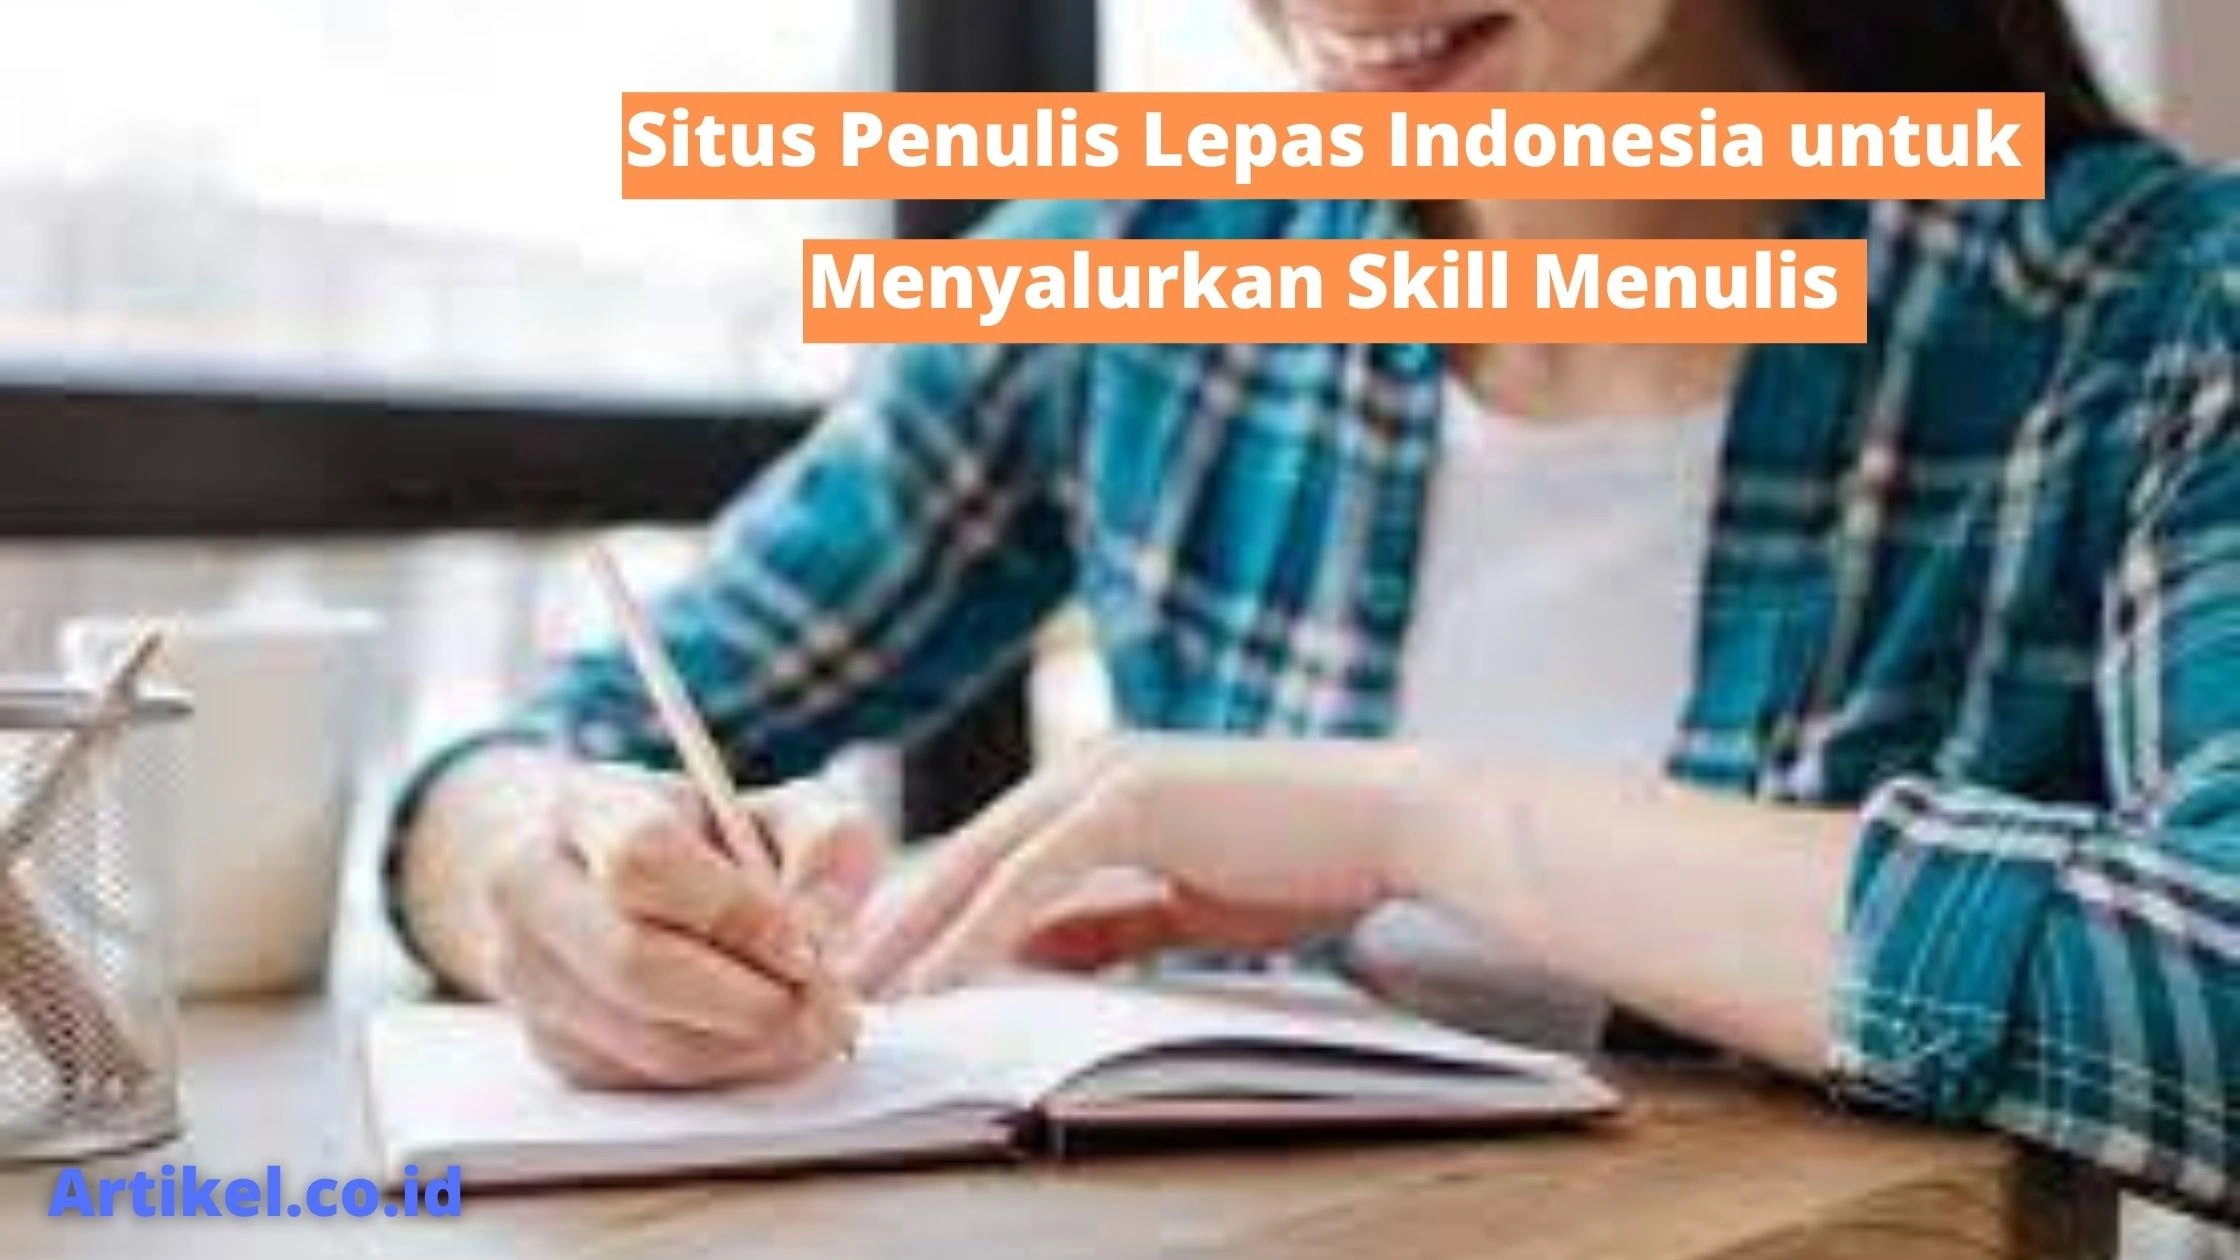 Situs Penulis Lepas Indonesia untuk Menyalurkan Skill Menulis